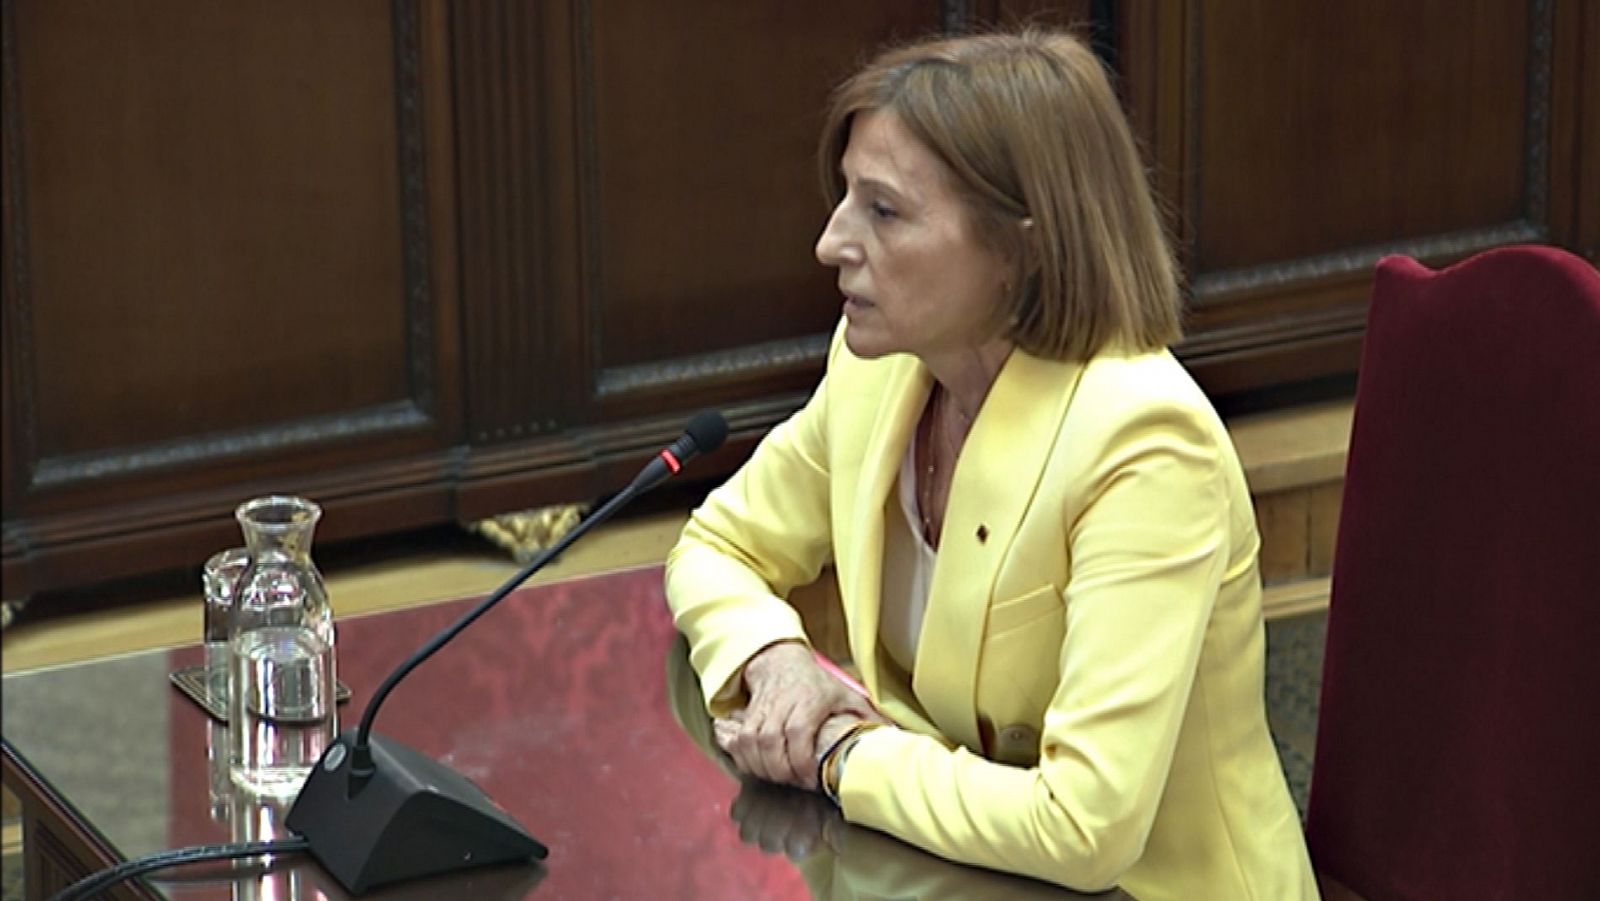 Juicio procés - Forcadell, en su última palabra: "Estoy siendo juzgada por ser quien soy, no por mis actos" - RTVE.es